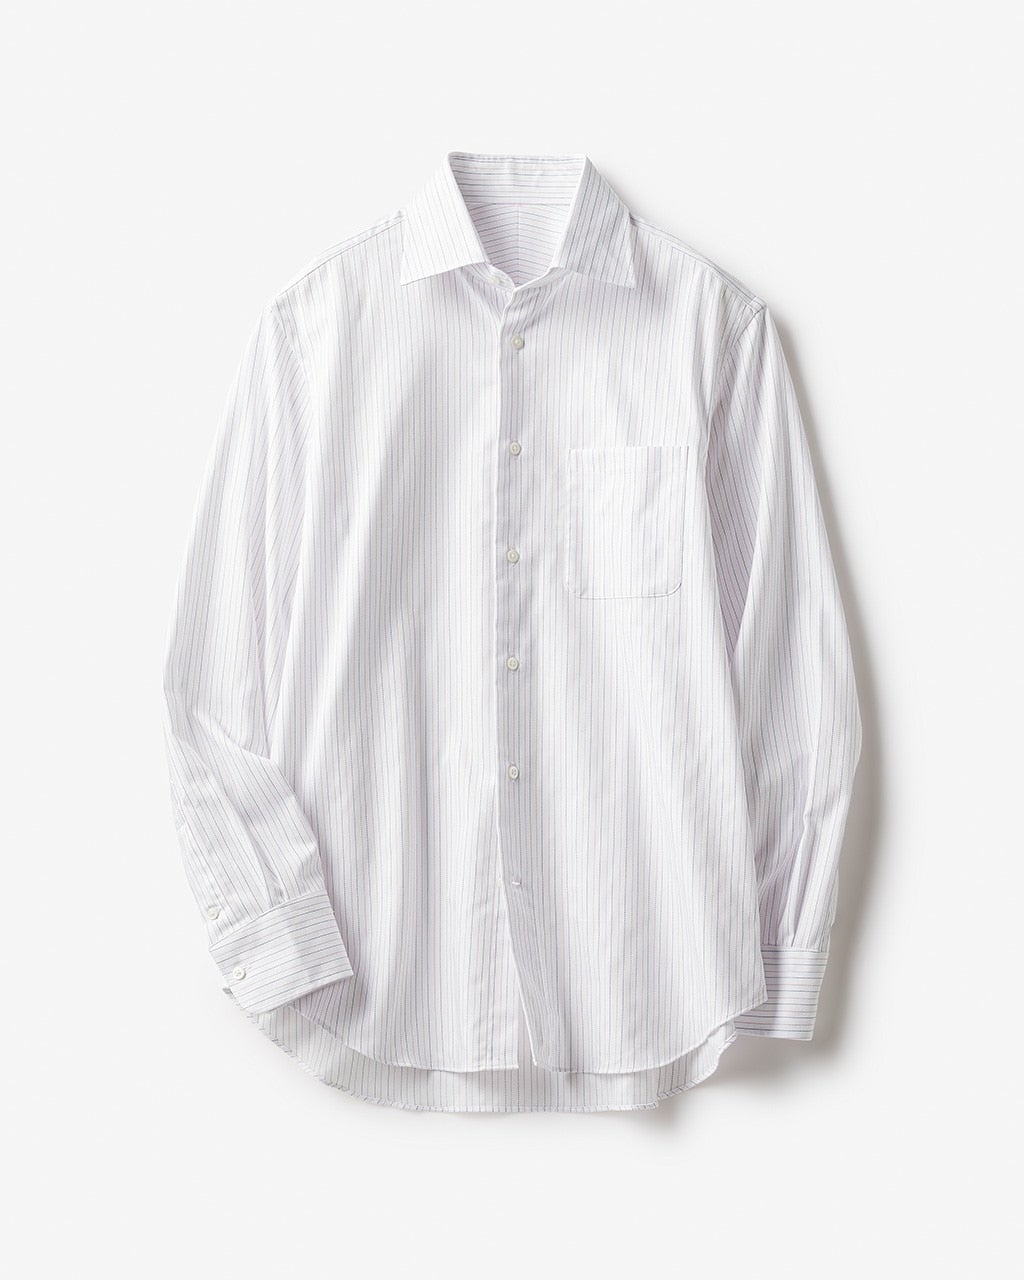 TELA テラホワイトシャツSサイズコットンシャツホワイトg